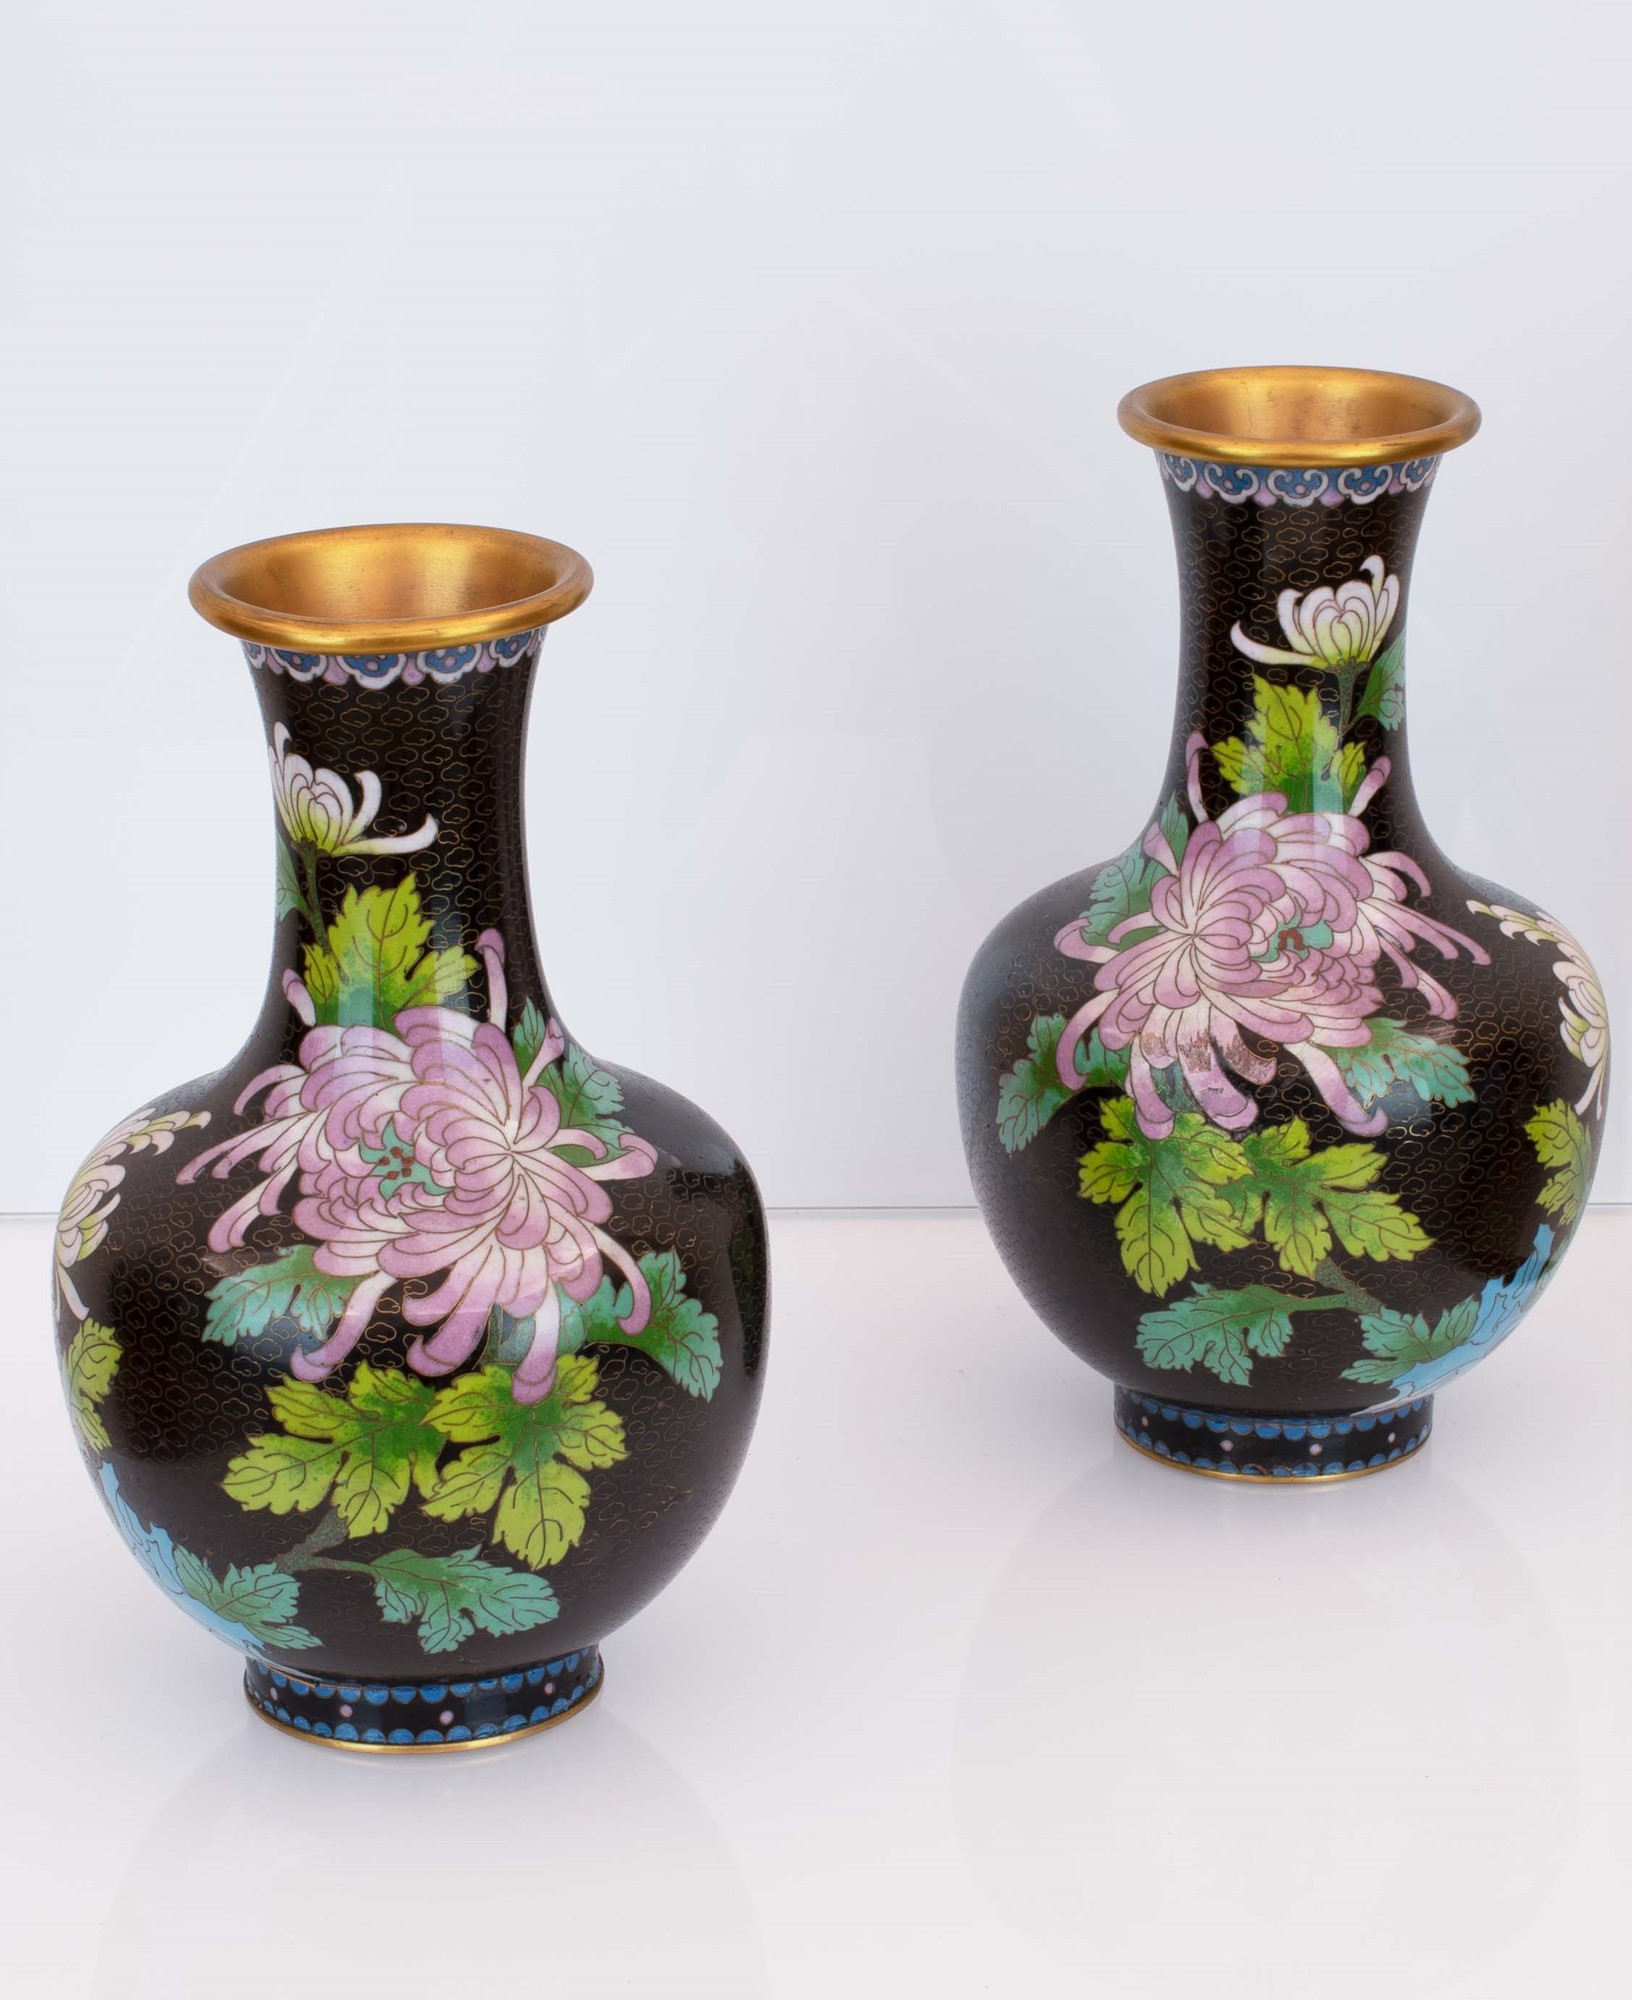 Coppia di vasi cloisonnet neri con decori floreali. Basi in legno ebanizzato. - Image 2 of 4